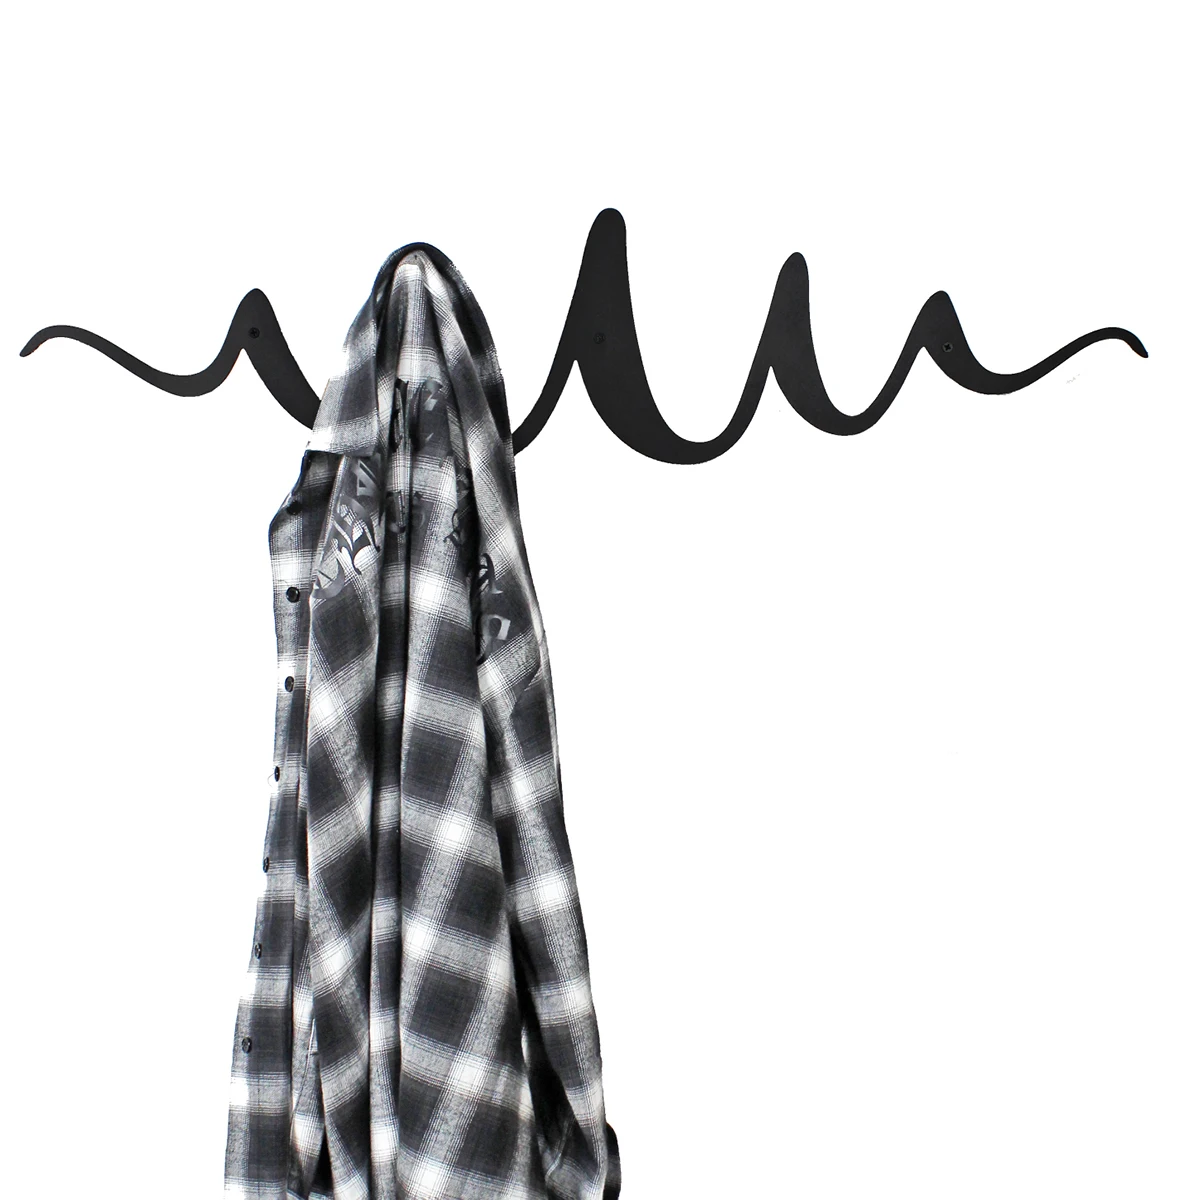 Скандинавские ins креативные настенные пальто стойки вход крыльцо вешалка в качестве украшения крюк Горизонтальная геометрическая волна вешалка